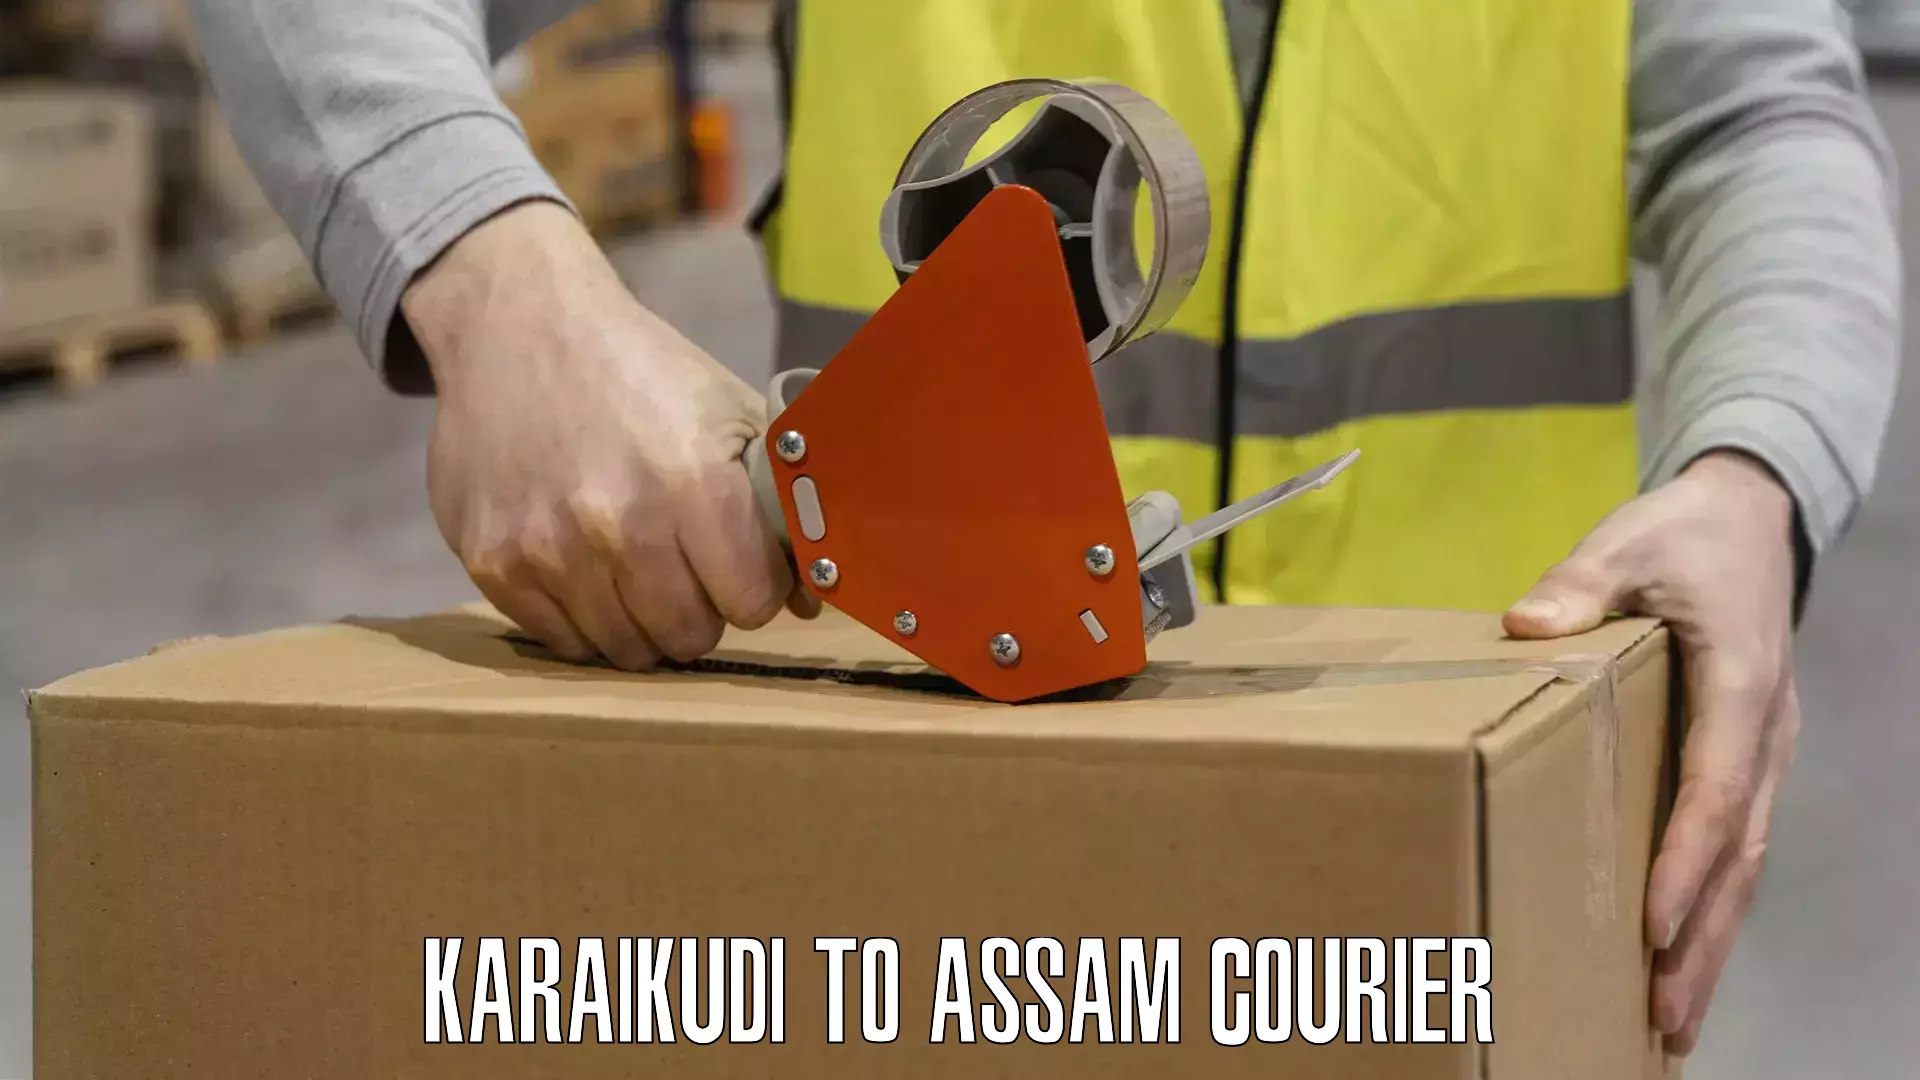 Easy access courier services Karaikudi to Kusumtola